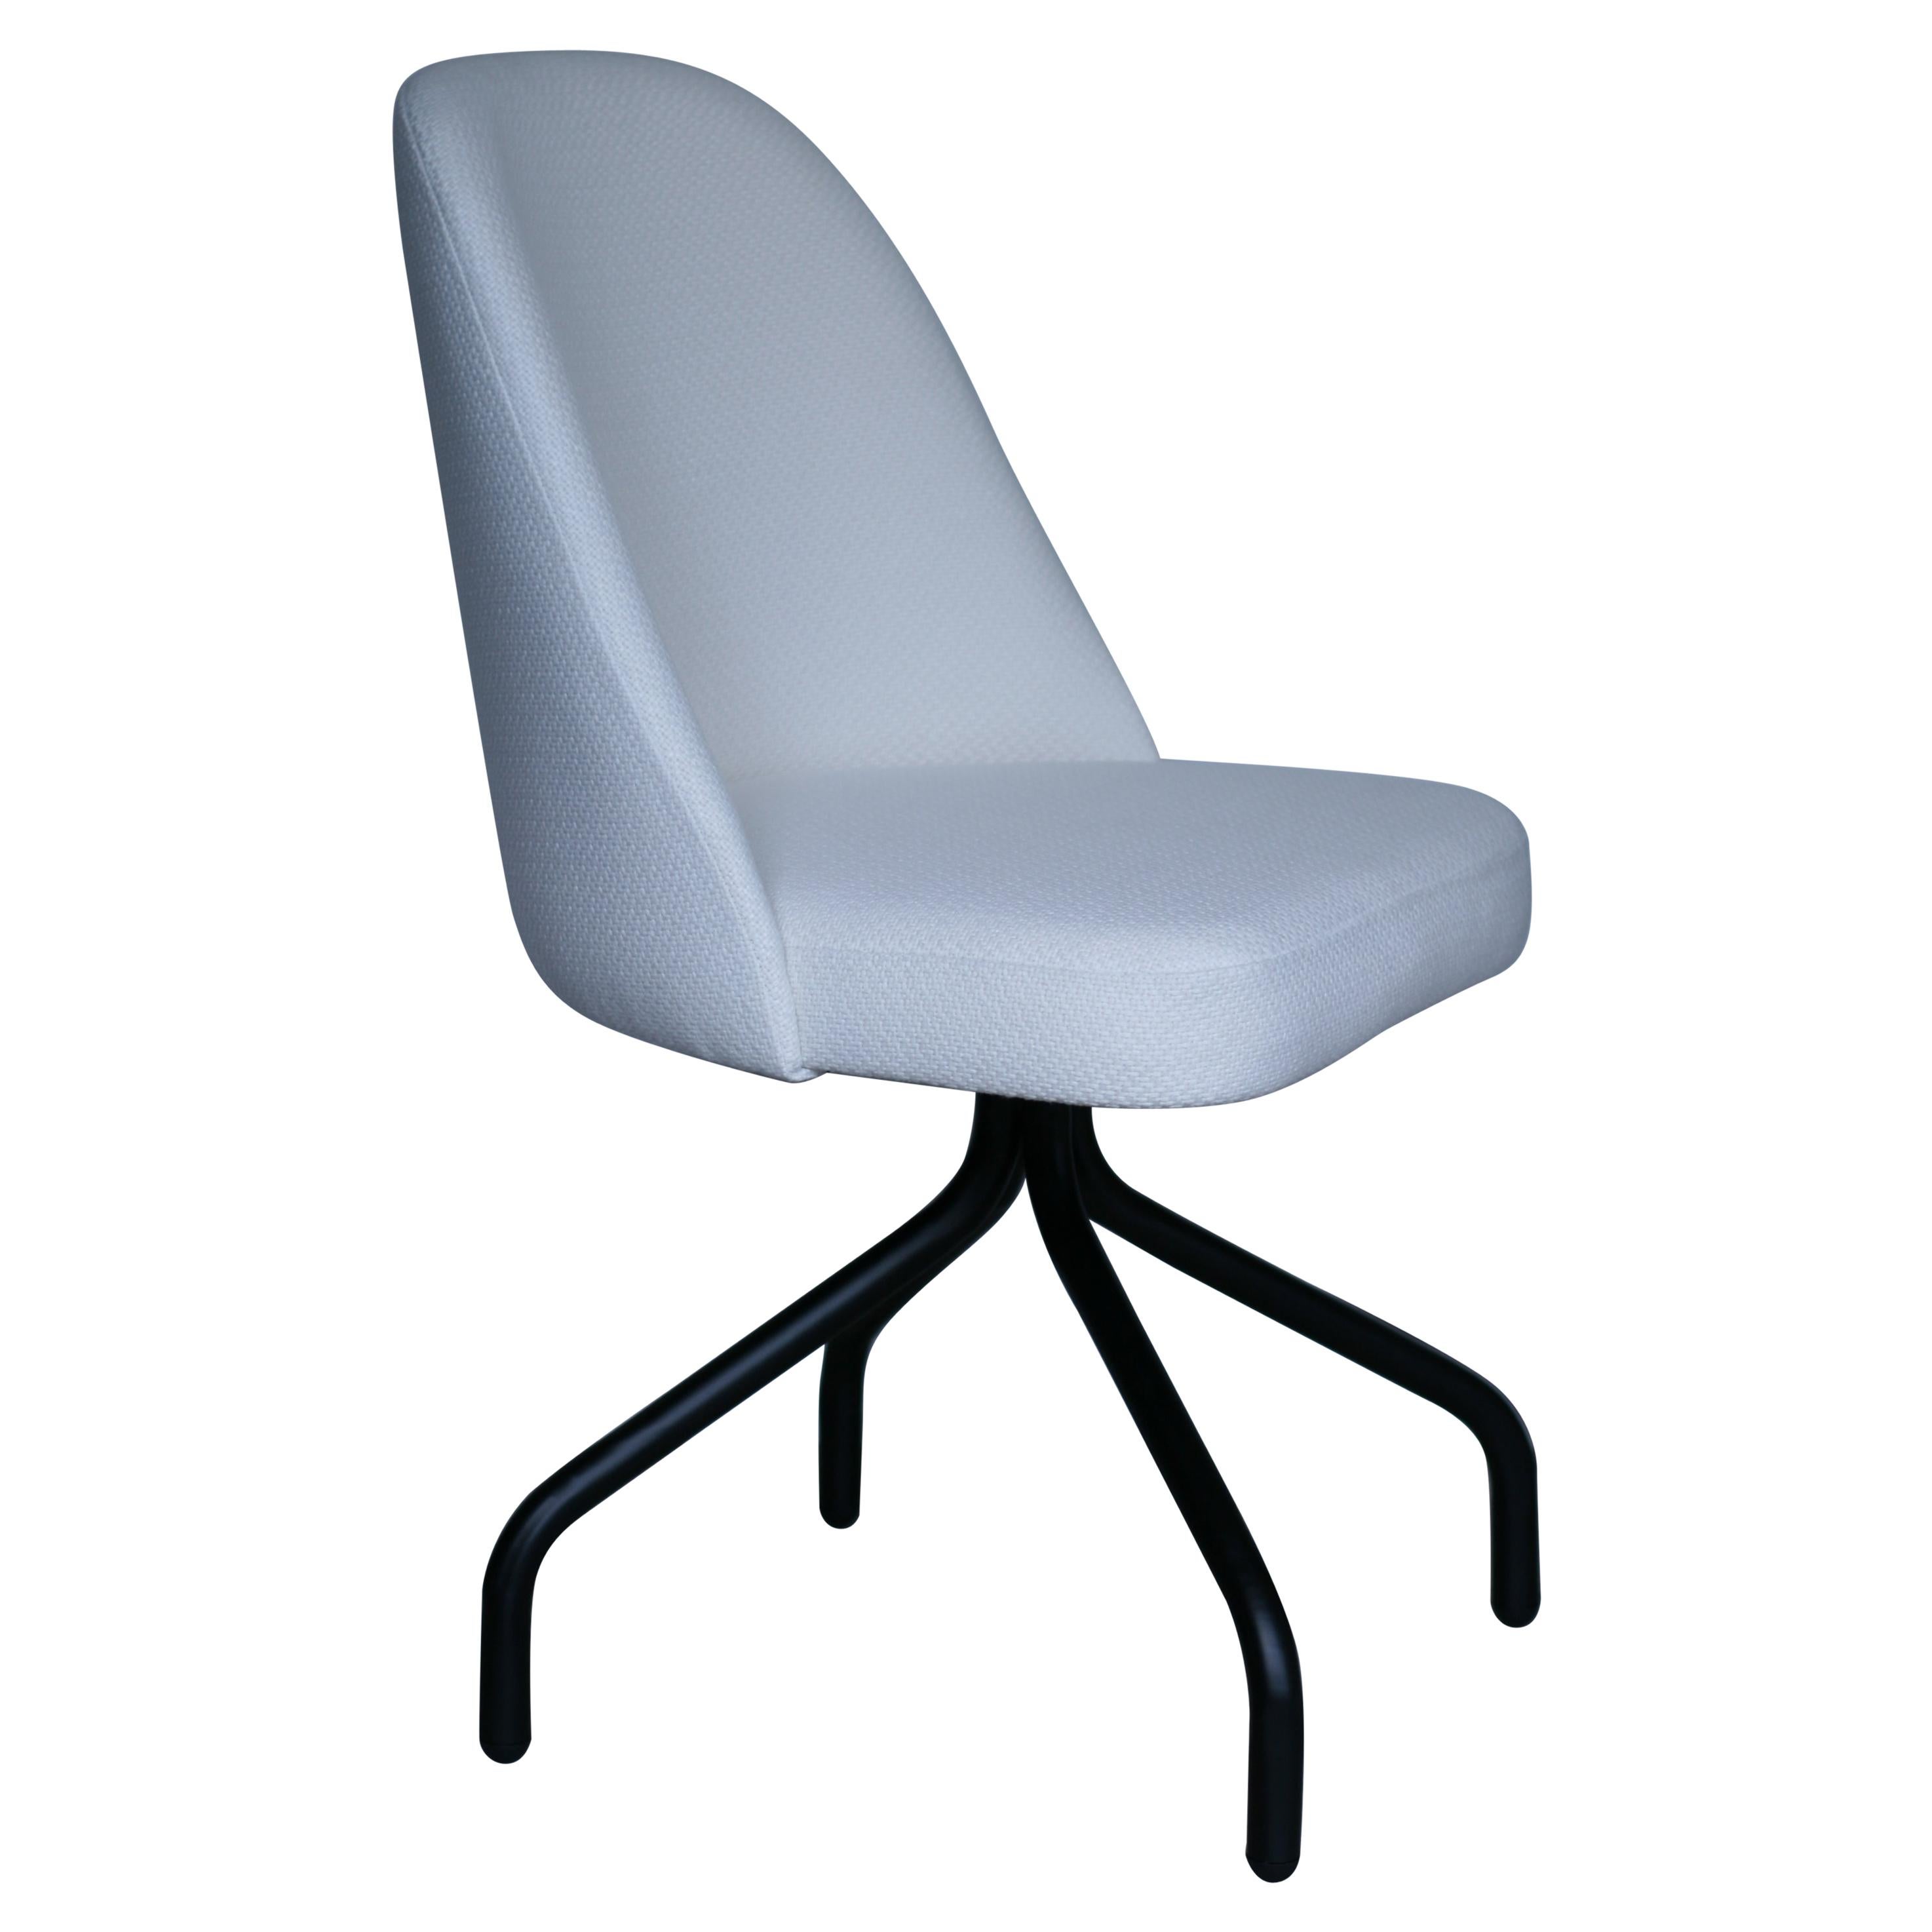 Chaise moderne en tissu ivoire et blanc avec base en acier noir